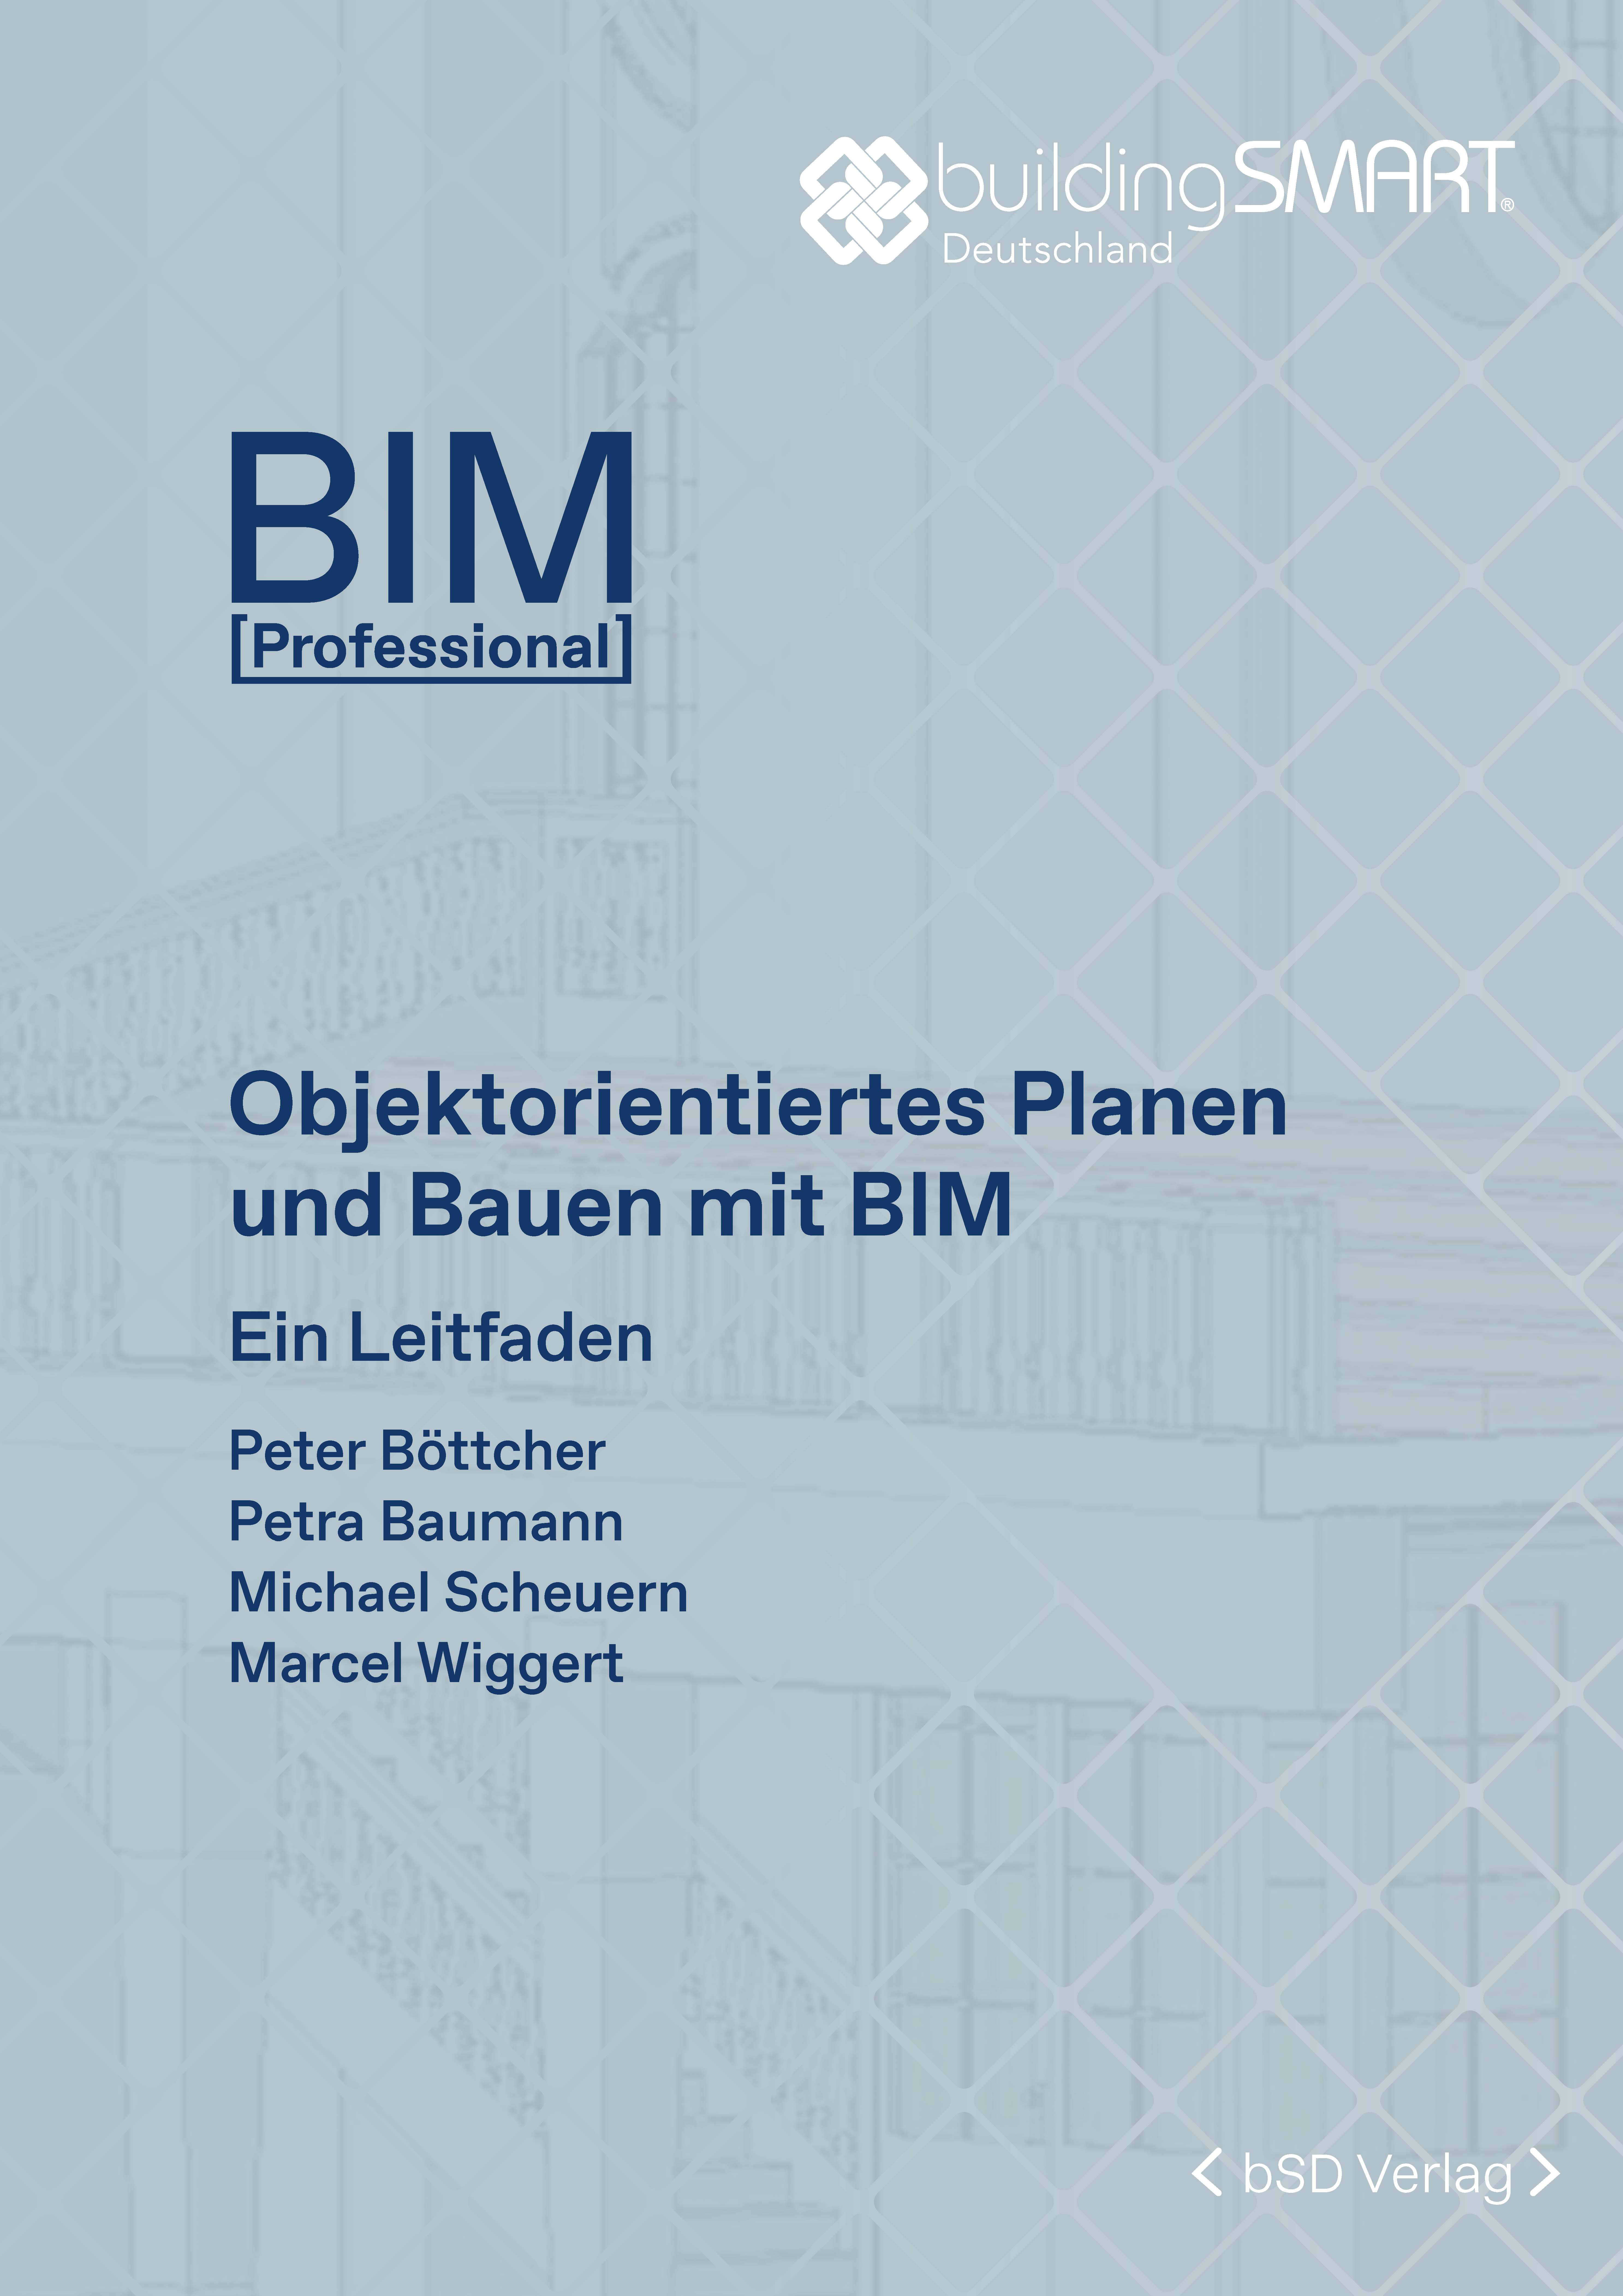 bSD Verlag/BIM Professional: Objektorientiertes Planen und Bauen mit BIM